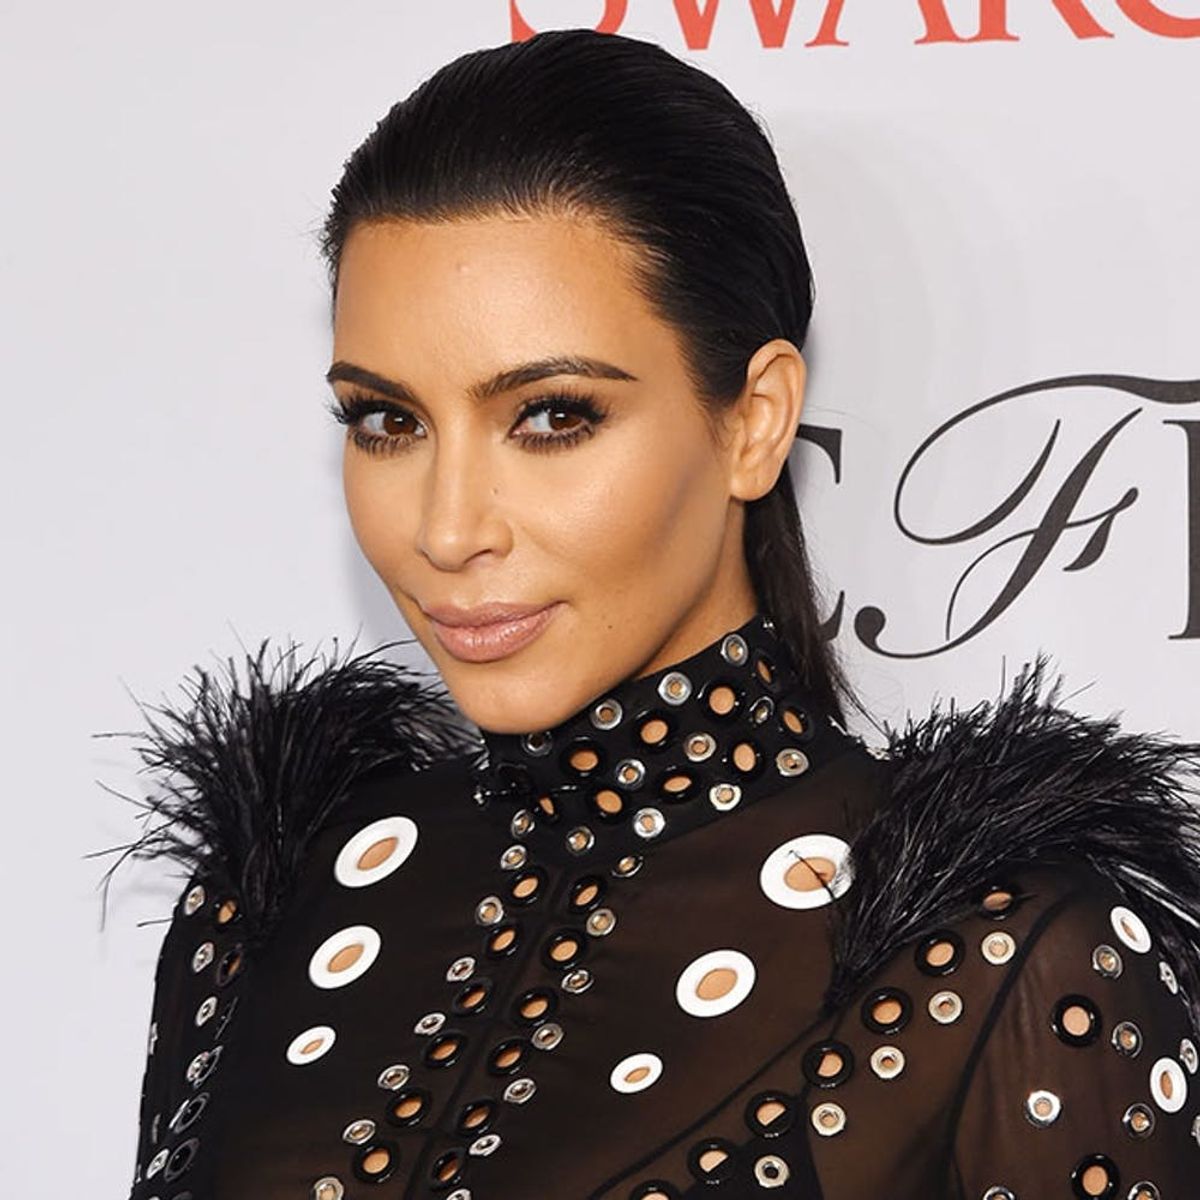 Kim Kardashian Finally Revealed the Gender of Her Baby